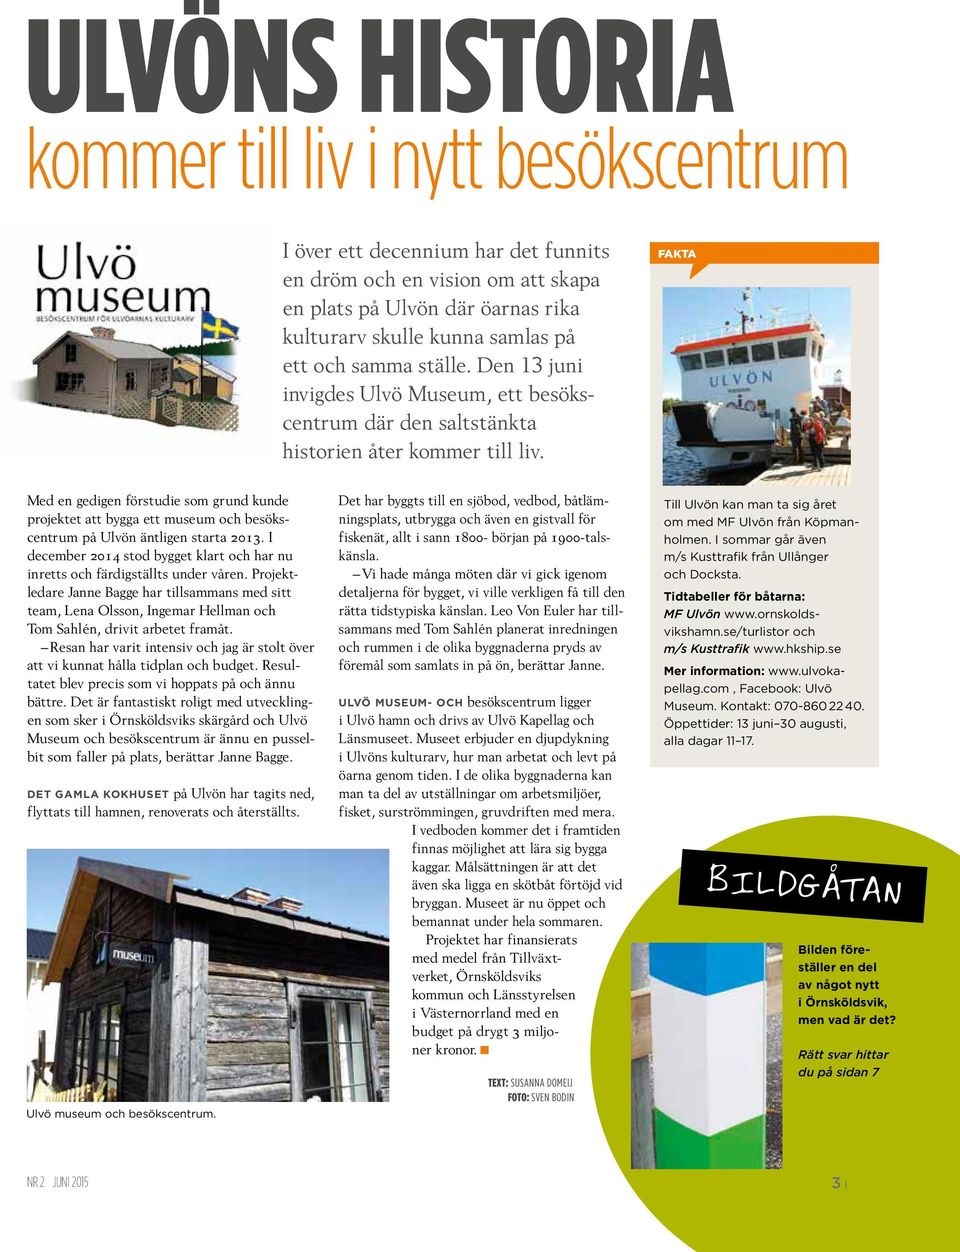 FAKTA Med en gedigen förstudie som grund kunde projektet att bygga ett museum och besökscentrum på Ulvön äntligen starta 2013.